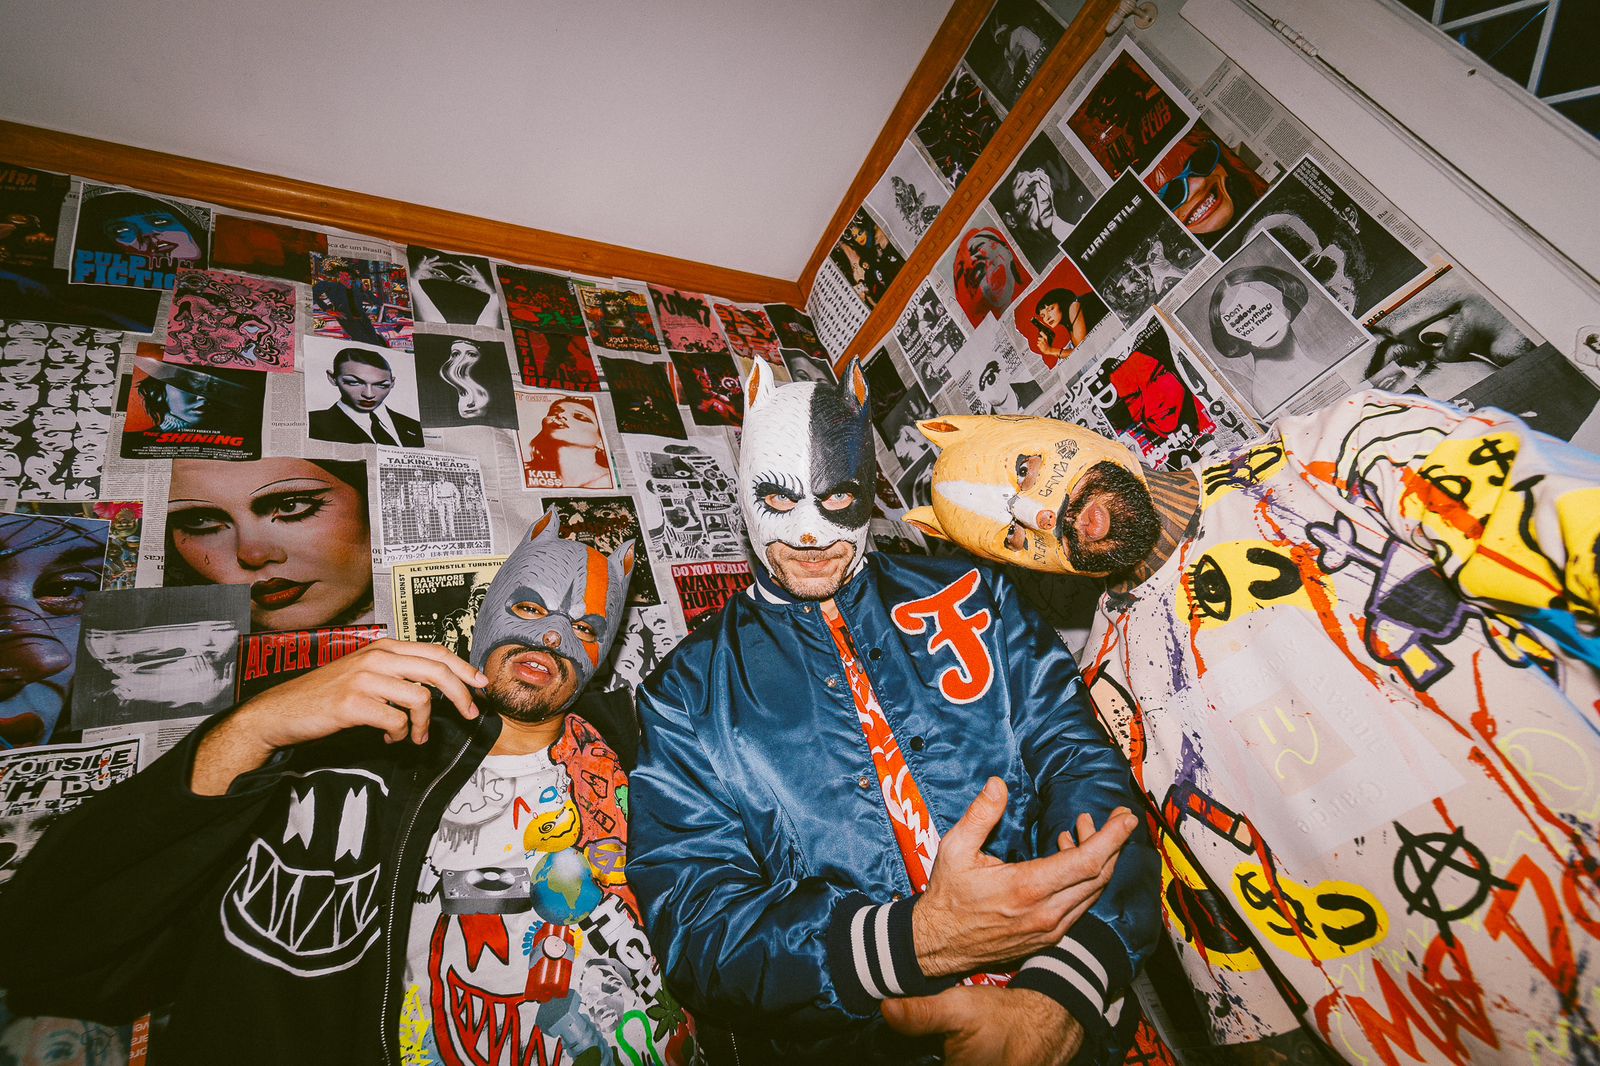 Conheça Mad Dogz, grupo mascarado que se apresenta no palco da Farofa da GKay